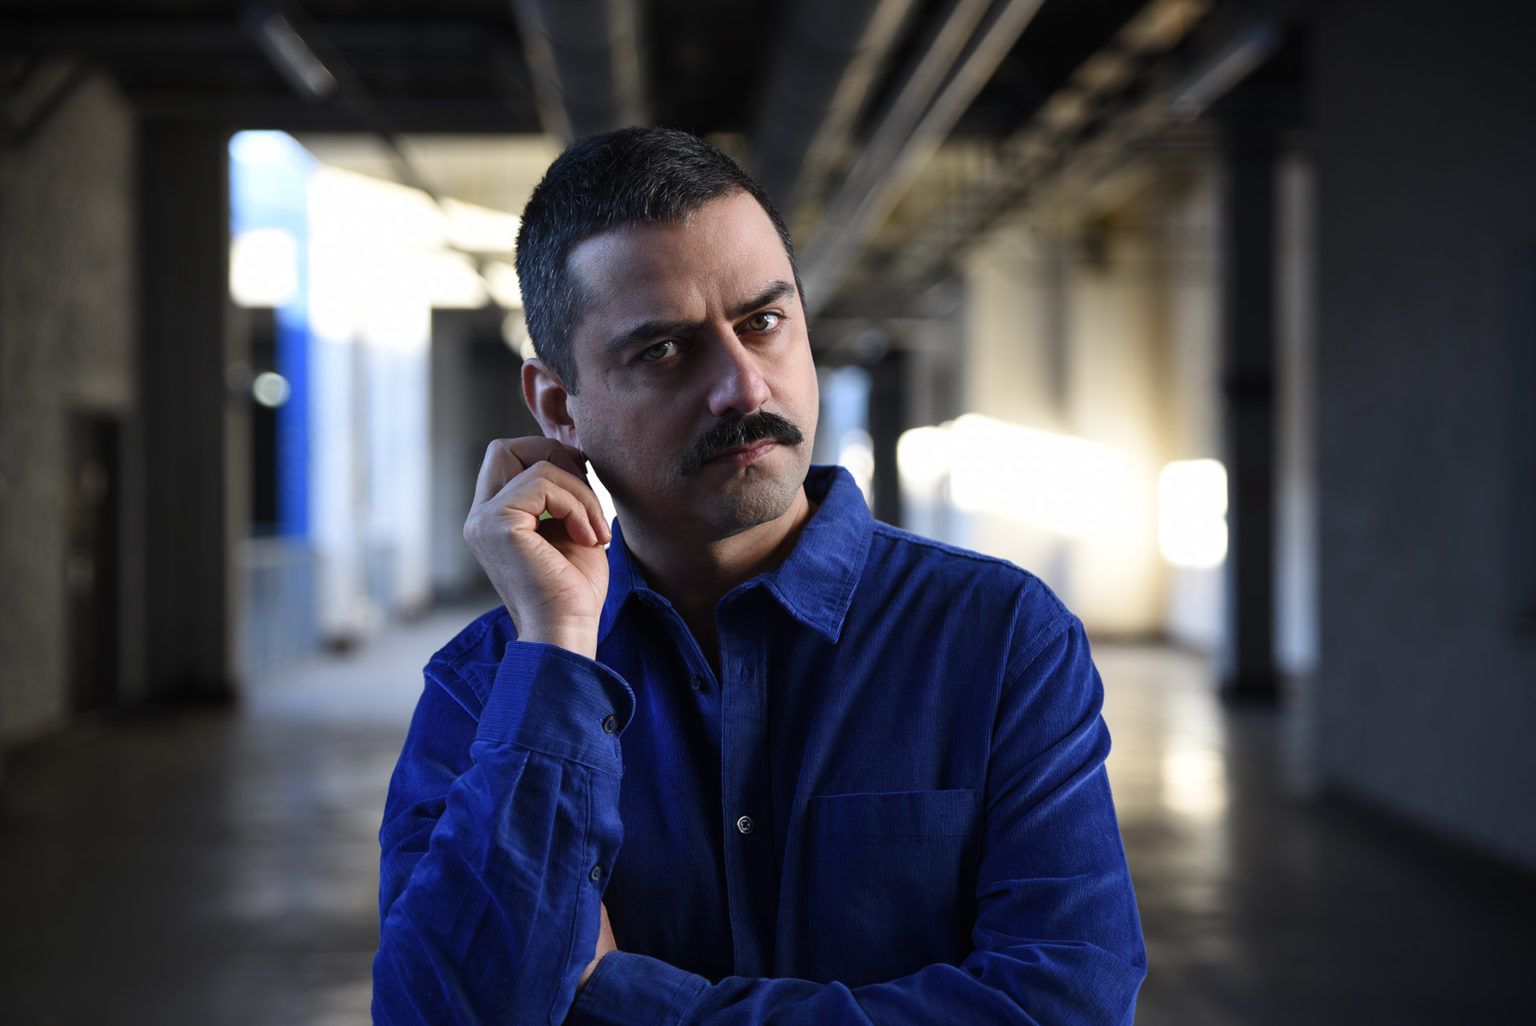 Portrait de l'artiste Gurshad Shaheman qui se touche l'oreille. Il porte une chemise bleue.